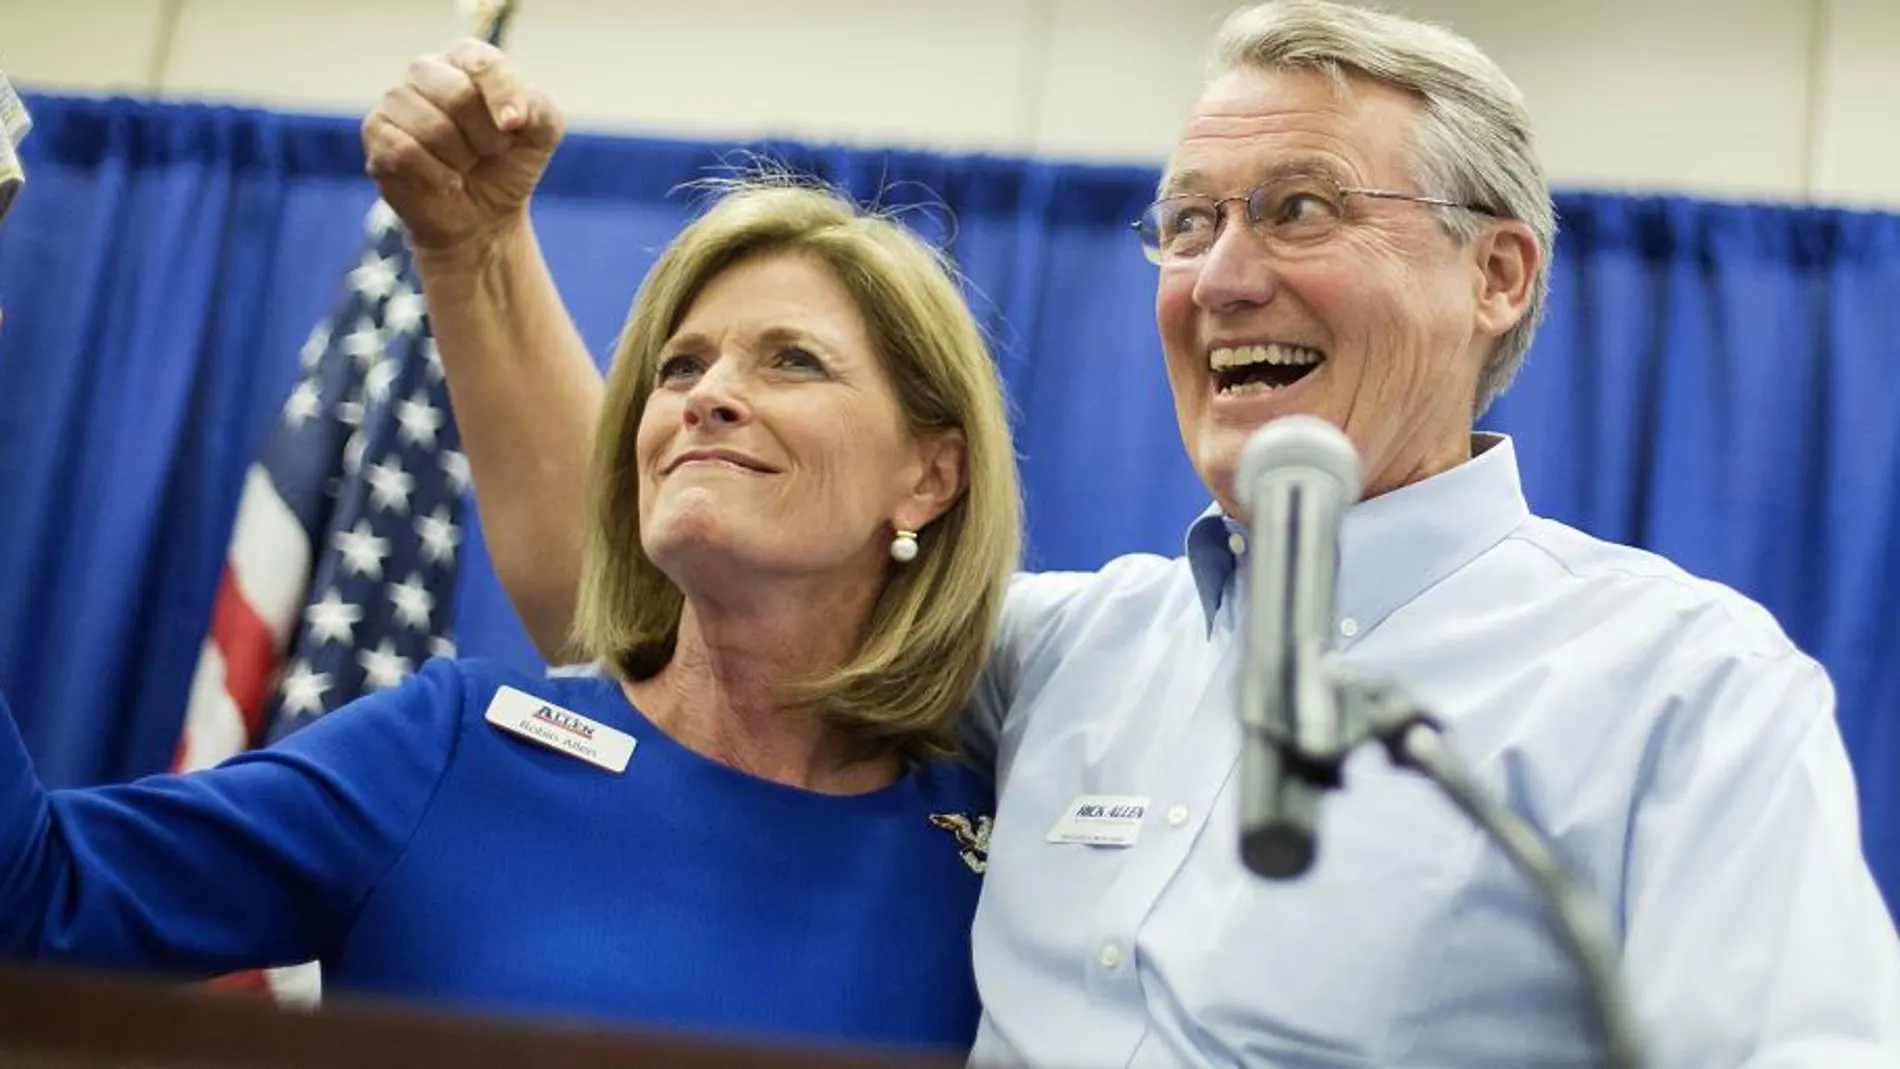 El candidato republicano por Georgia Rick Allen, junto a su esposa, en un acto electoral.